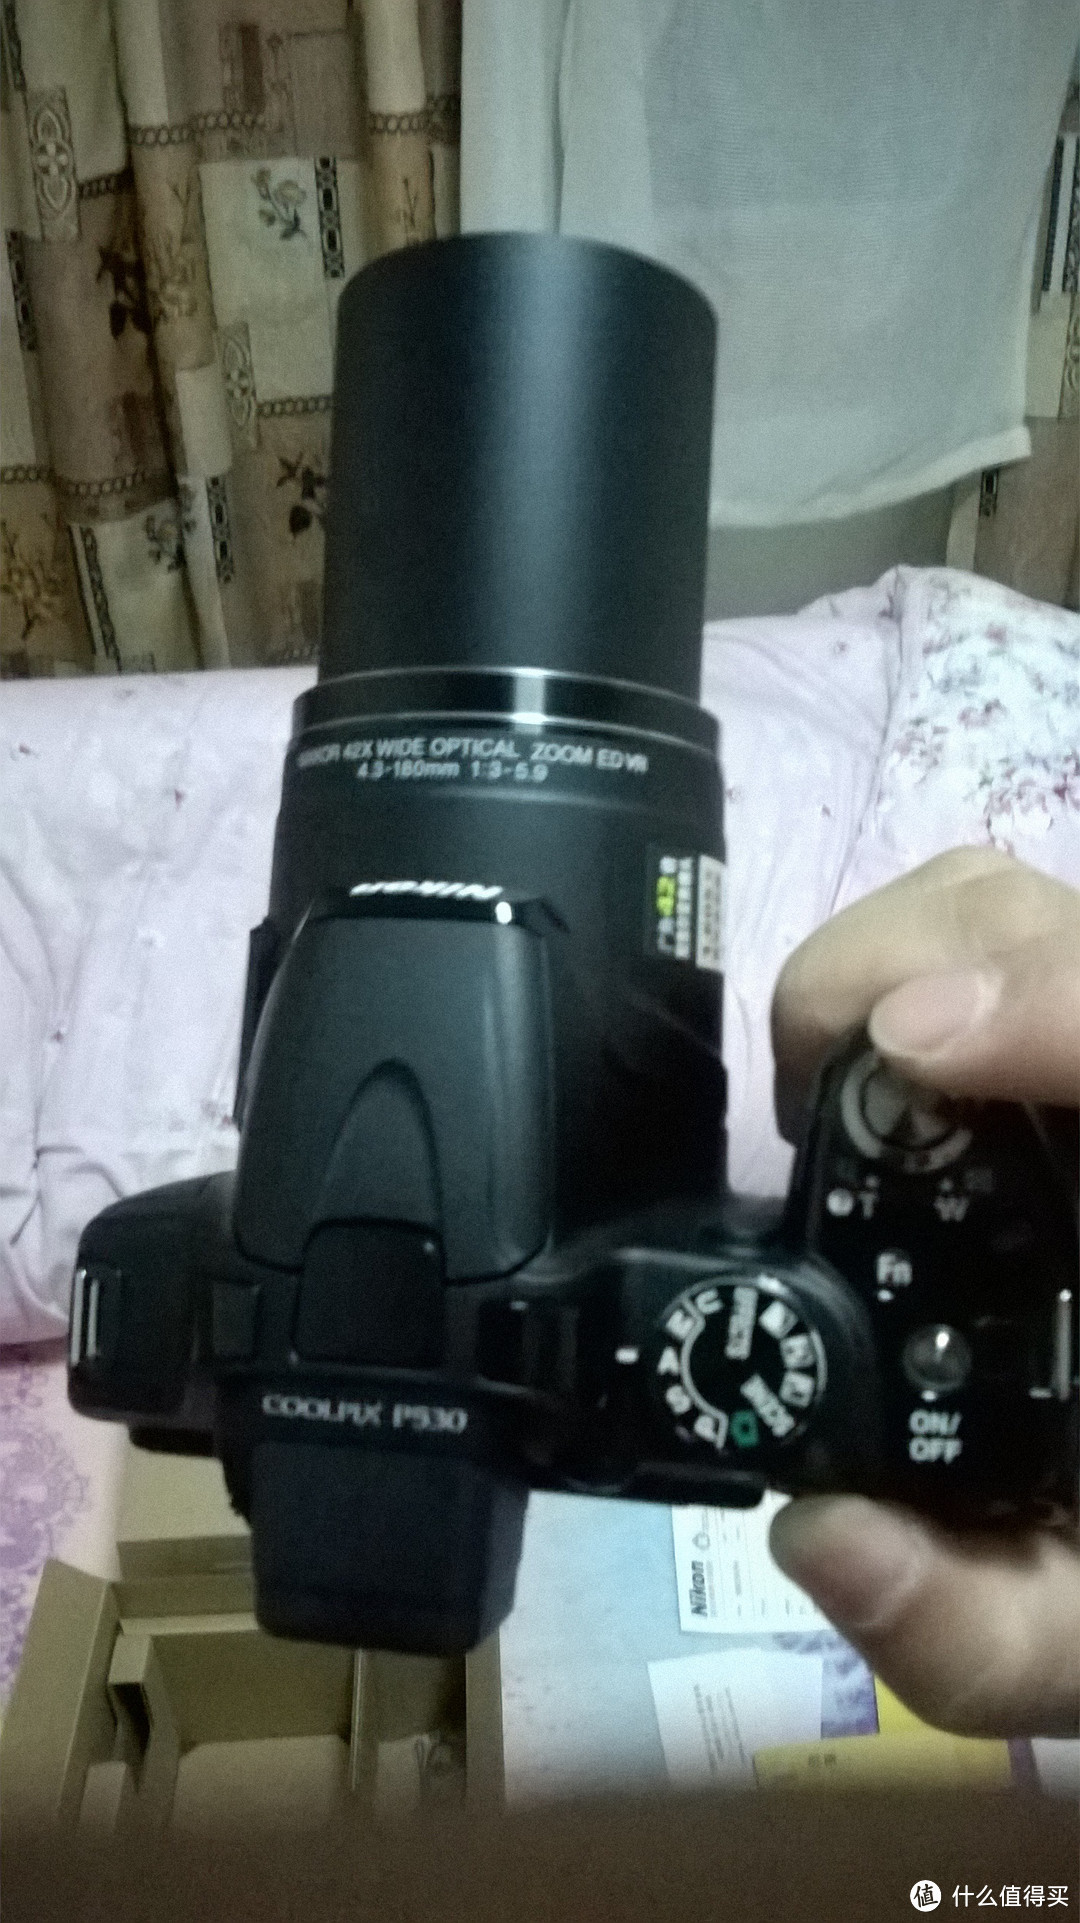 过年回家送父母：Nikon 尼康 相机P530